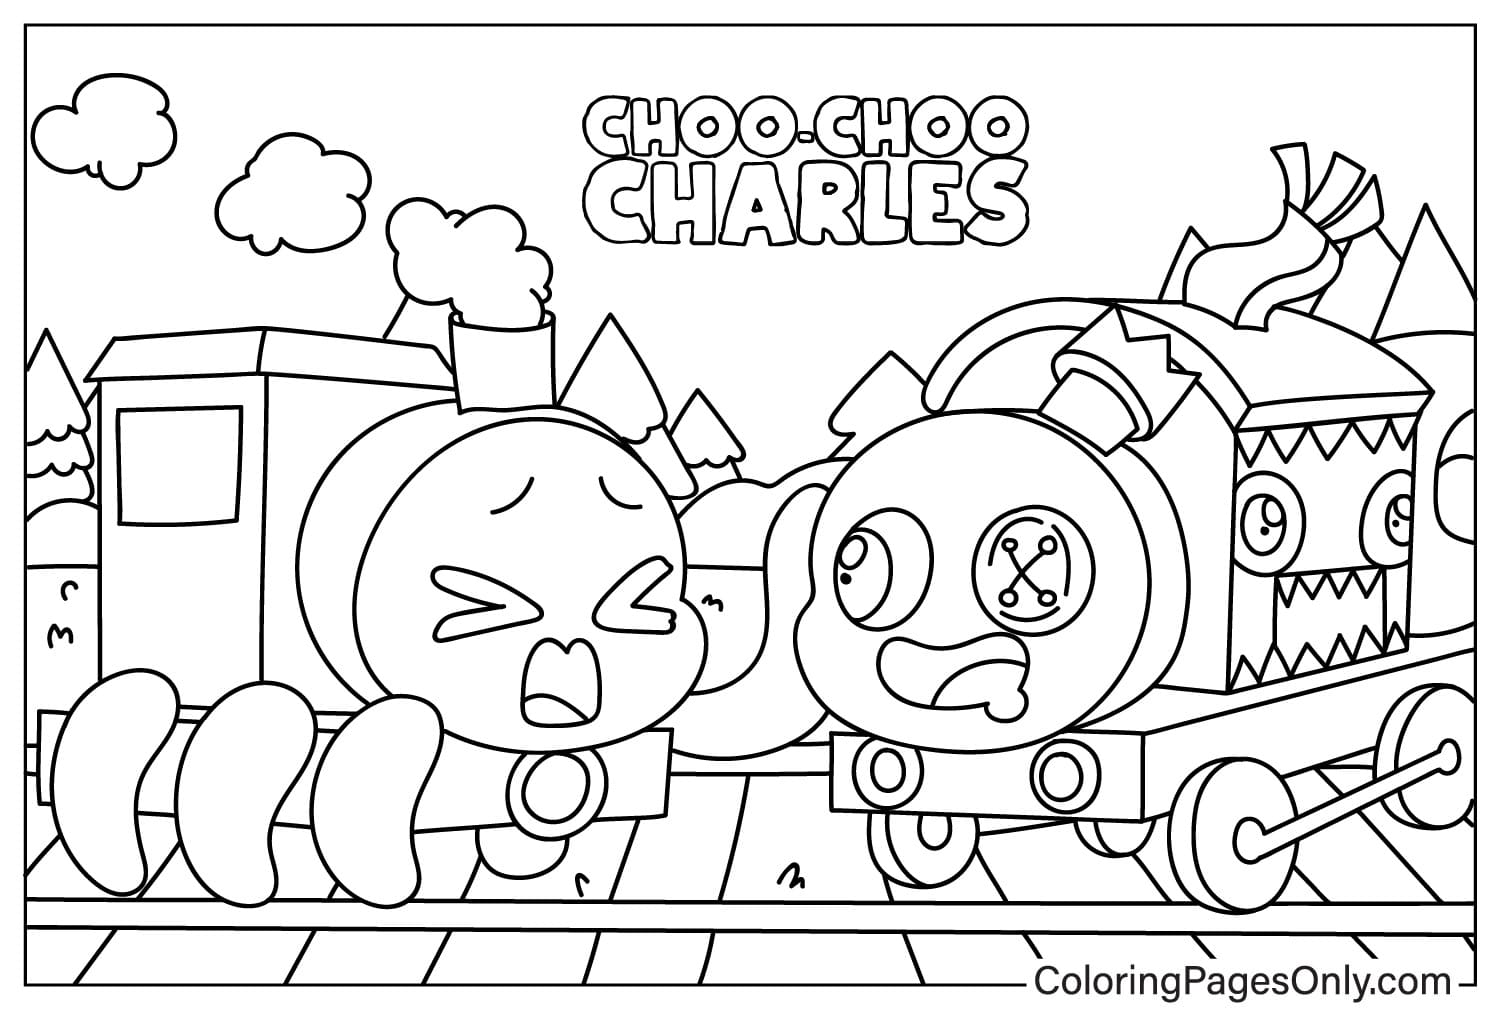 Thomas and Baby Cute Choo-Choo Charles from Choo-Choo Charles